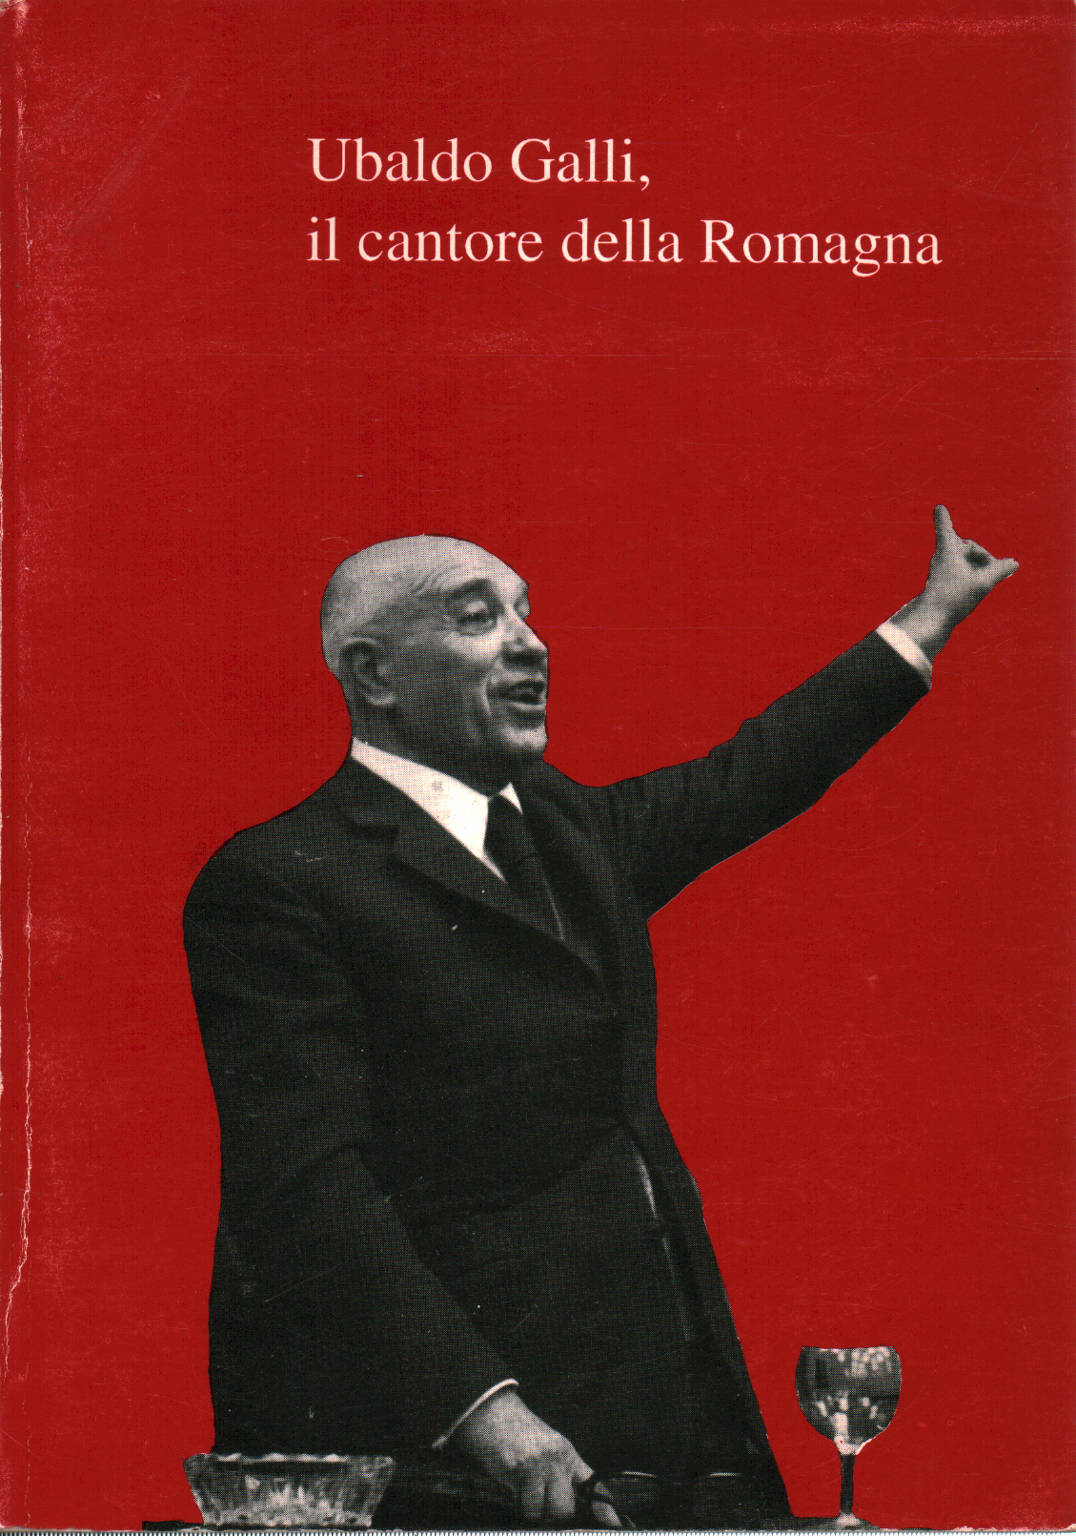 Ubaldo Galli, der sänger der Romagna, Gaetano Marzocchi